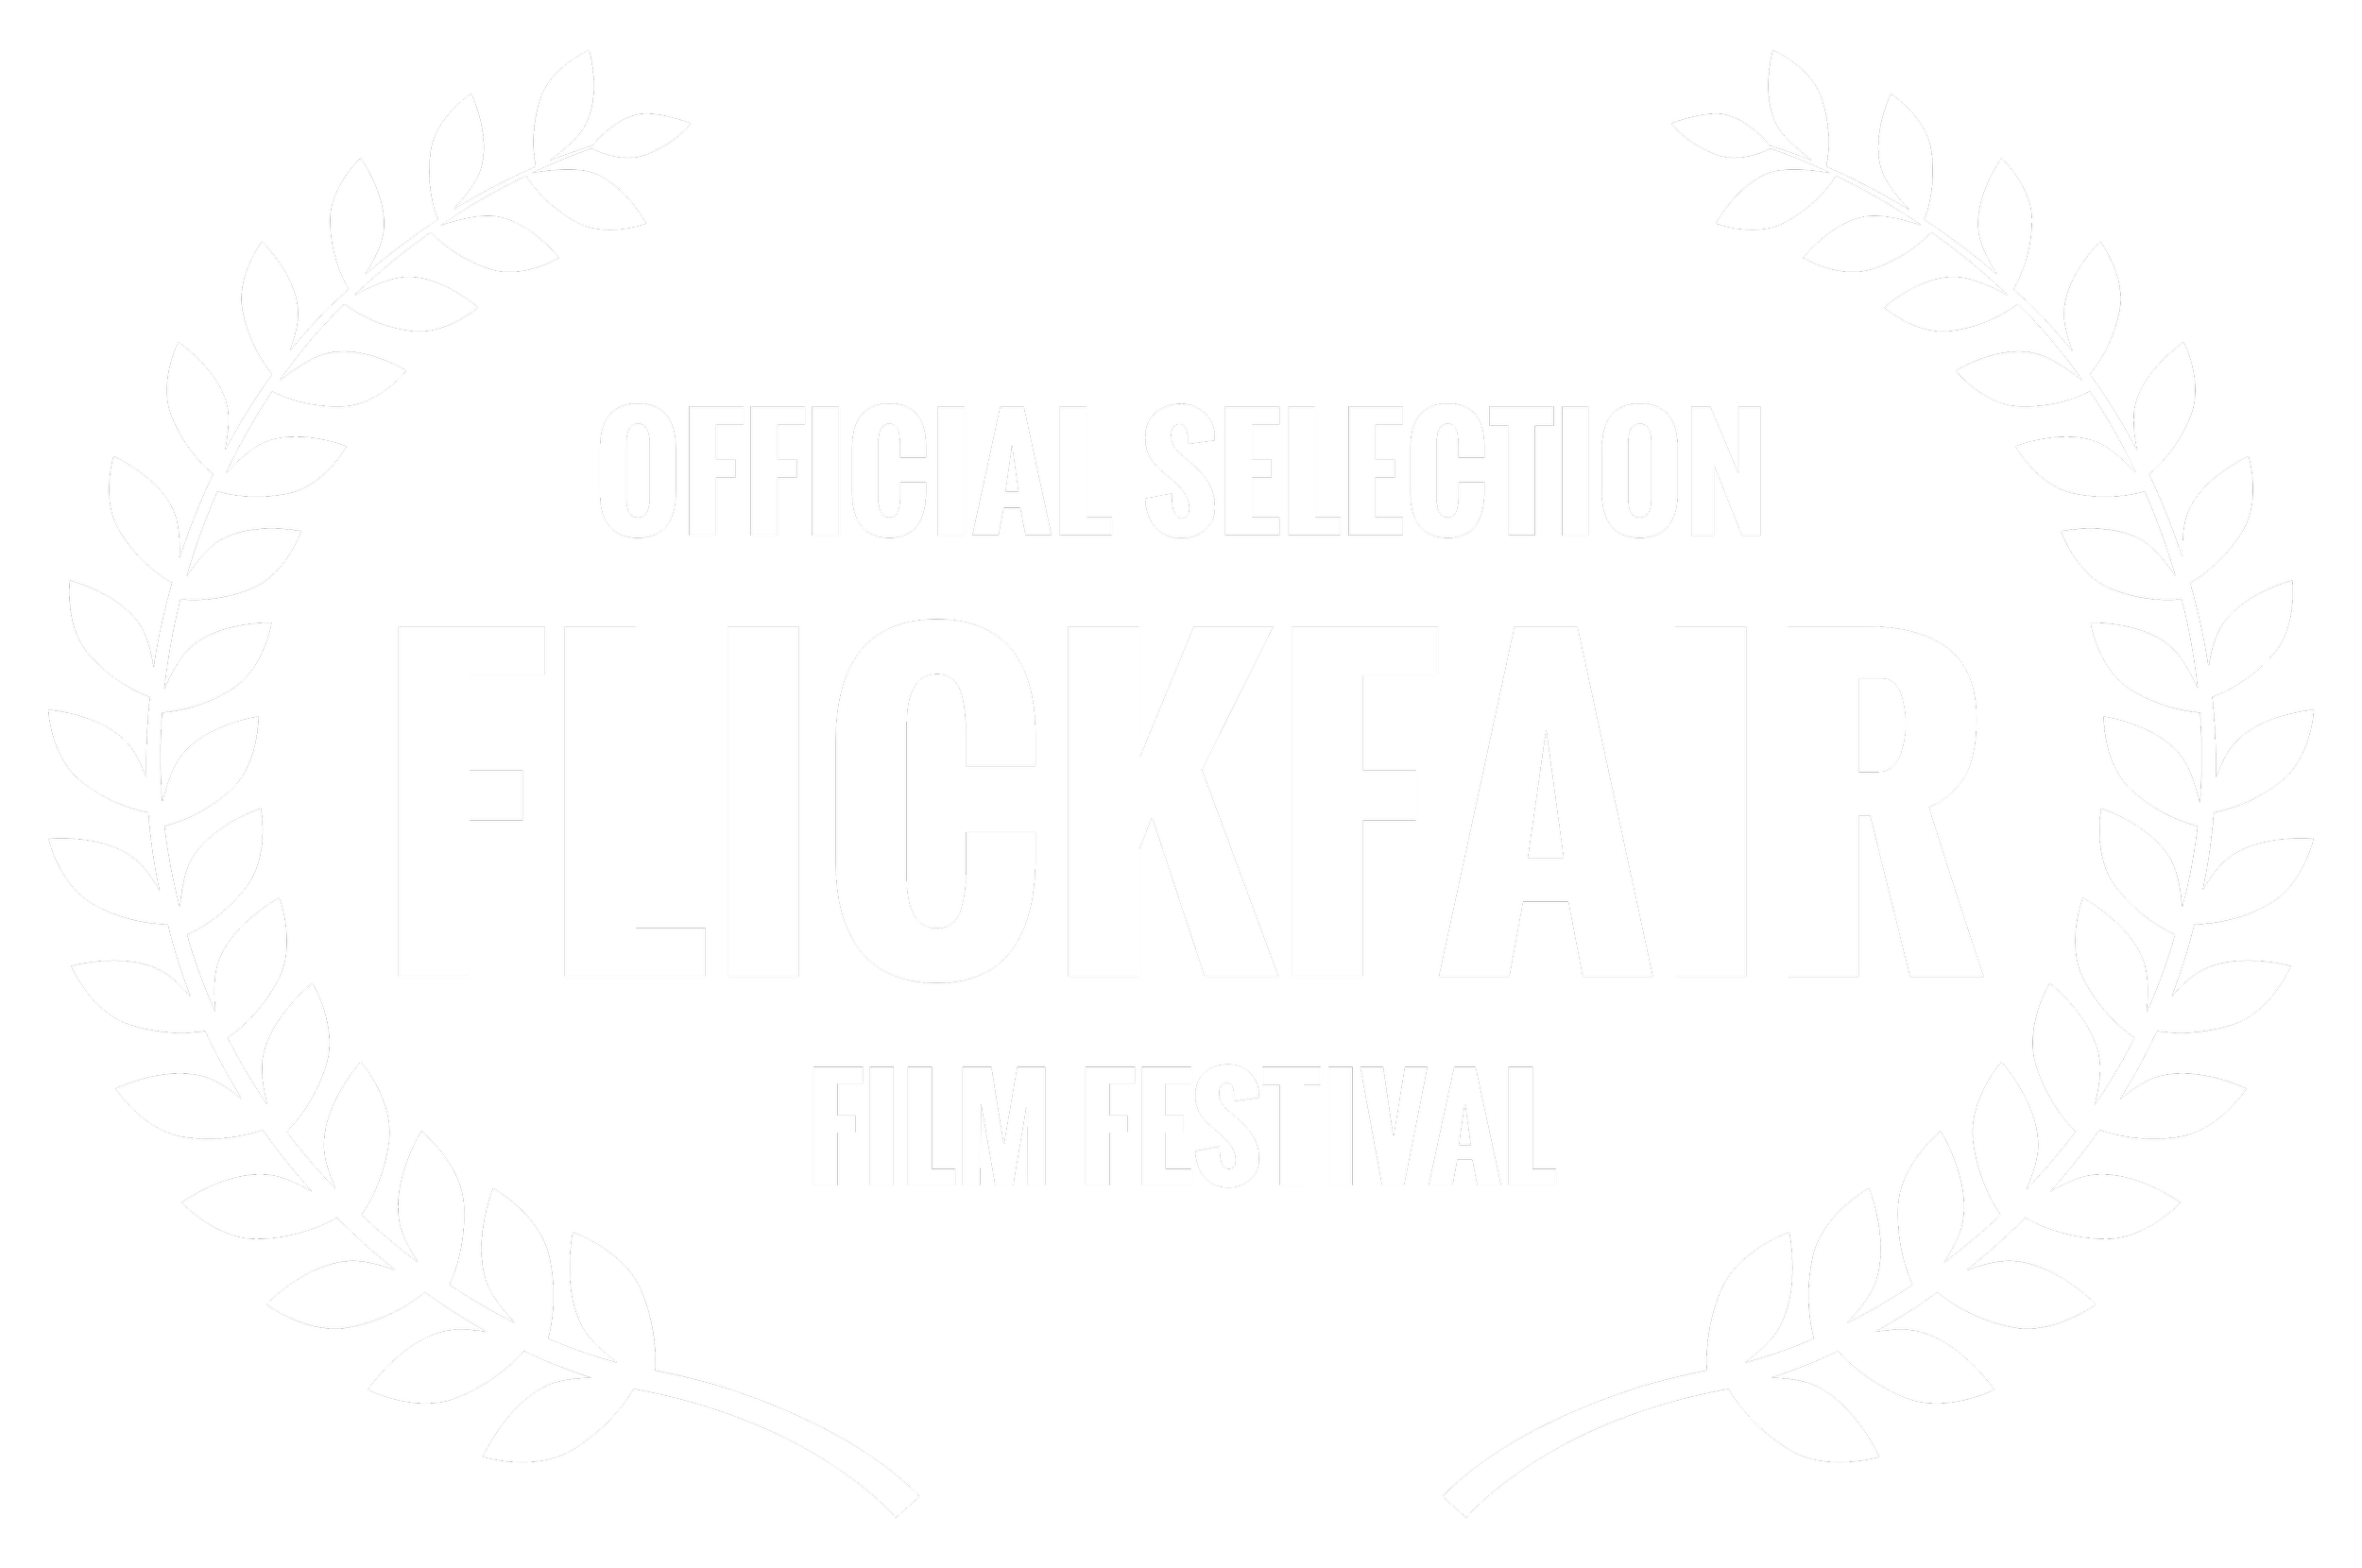 Flickfair selectioon.png